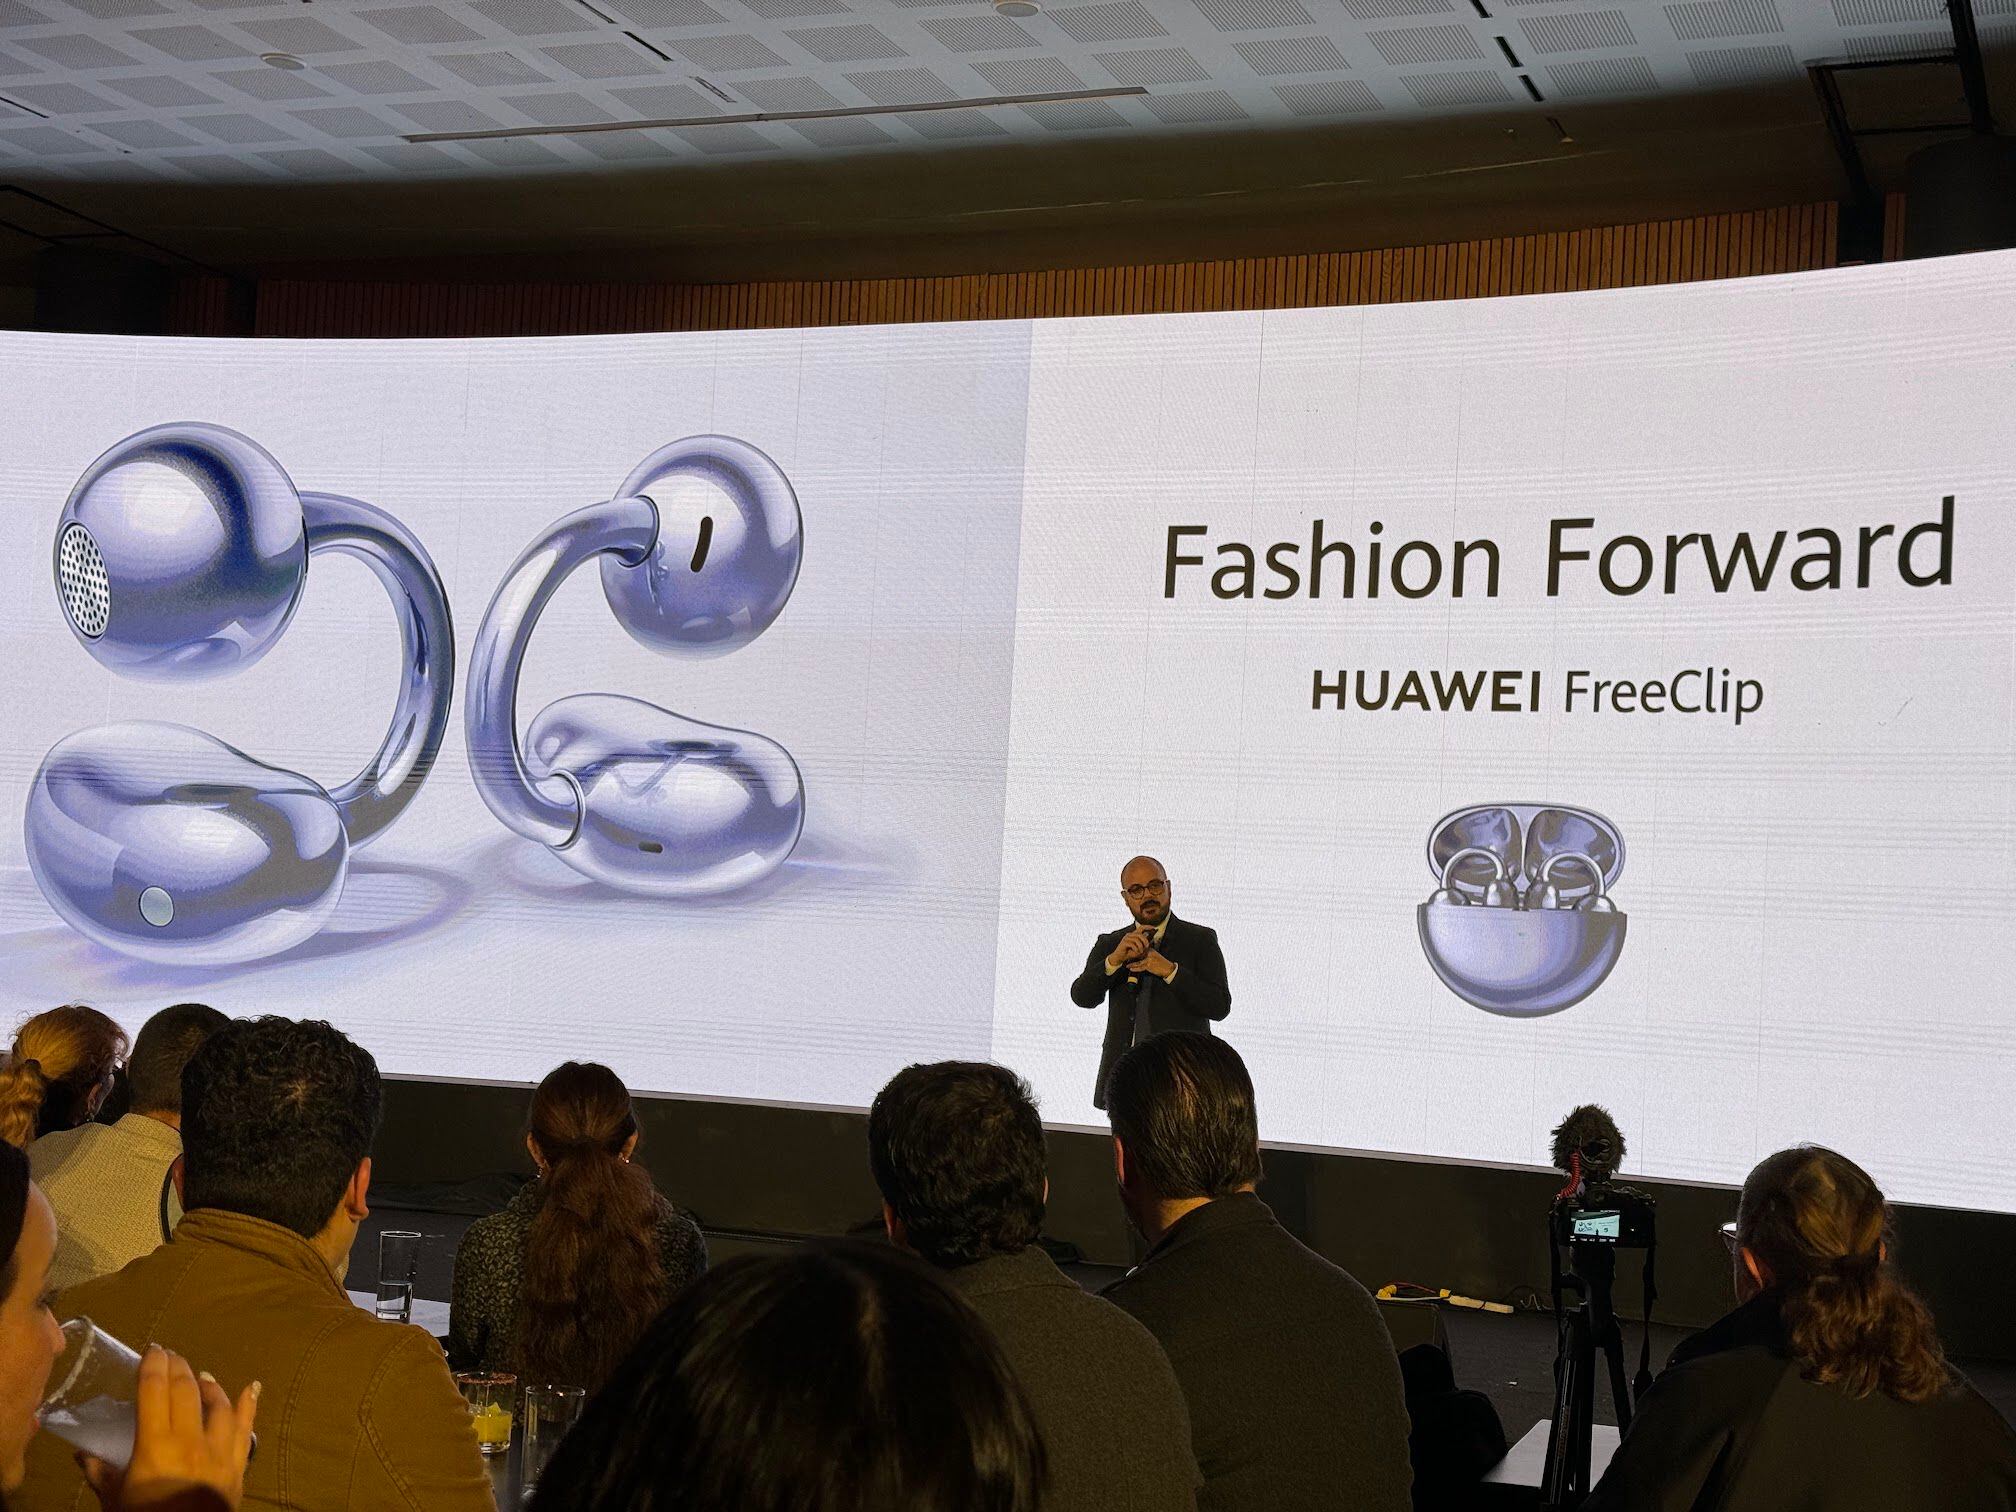 Huawei sorprende con sus FreeClip: el rompedor diseño de estos auriculares  hace que parezcan joyas